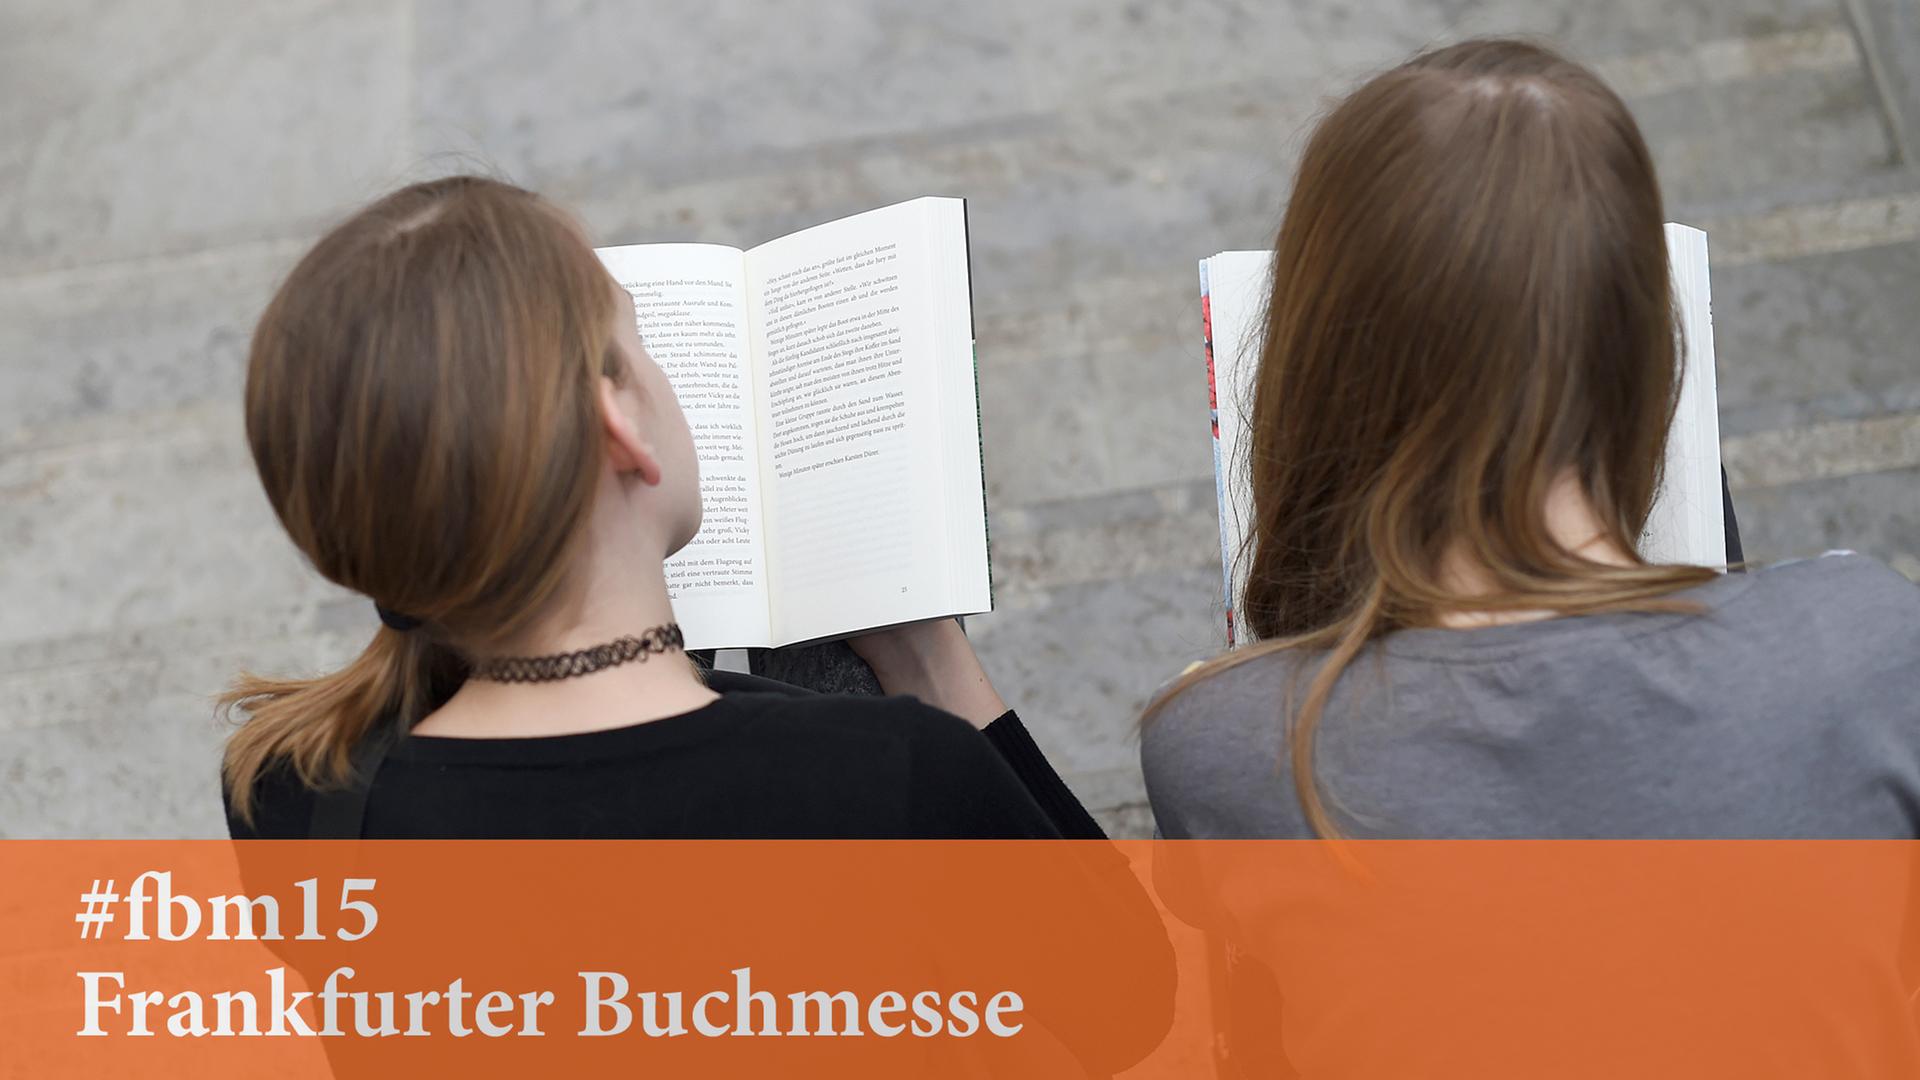 Jugendliche finden auf der Frankfurter Buchmesse genügend Lesestoff.